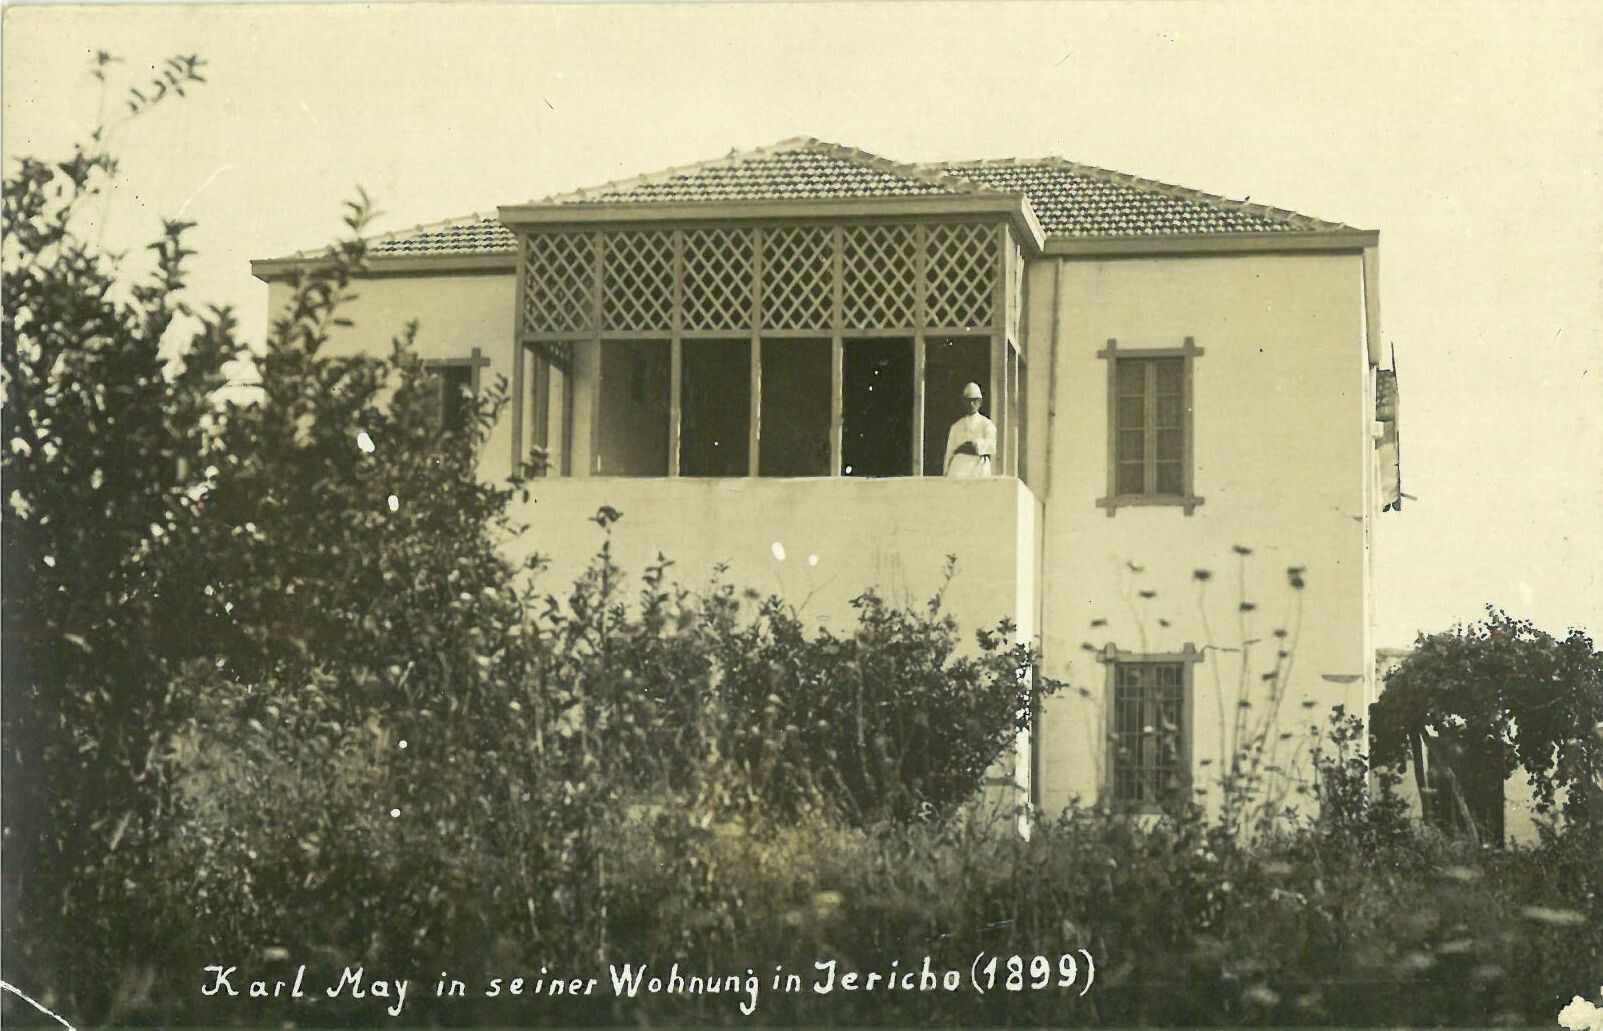 Karl May Karte; Karl May in seiner Wohnung in Jericho 1899 (Karl-May-Museum gGmbH RR-R)